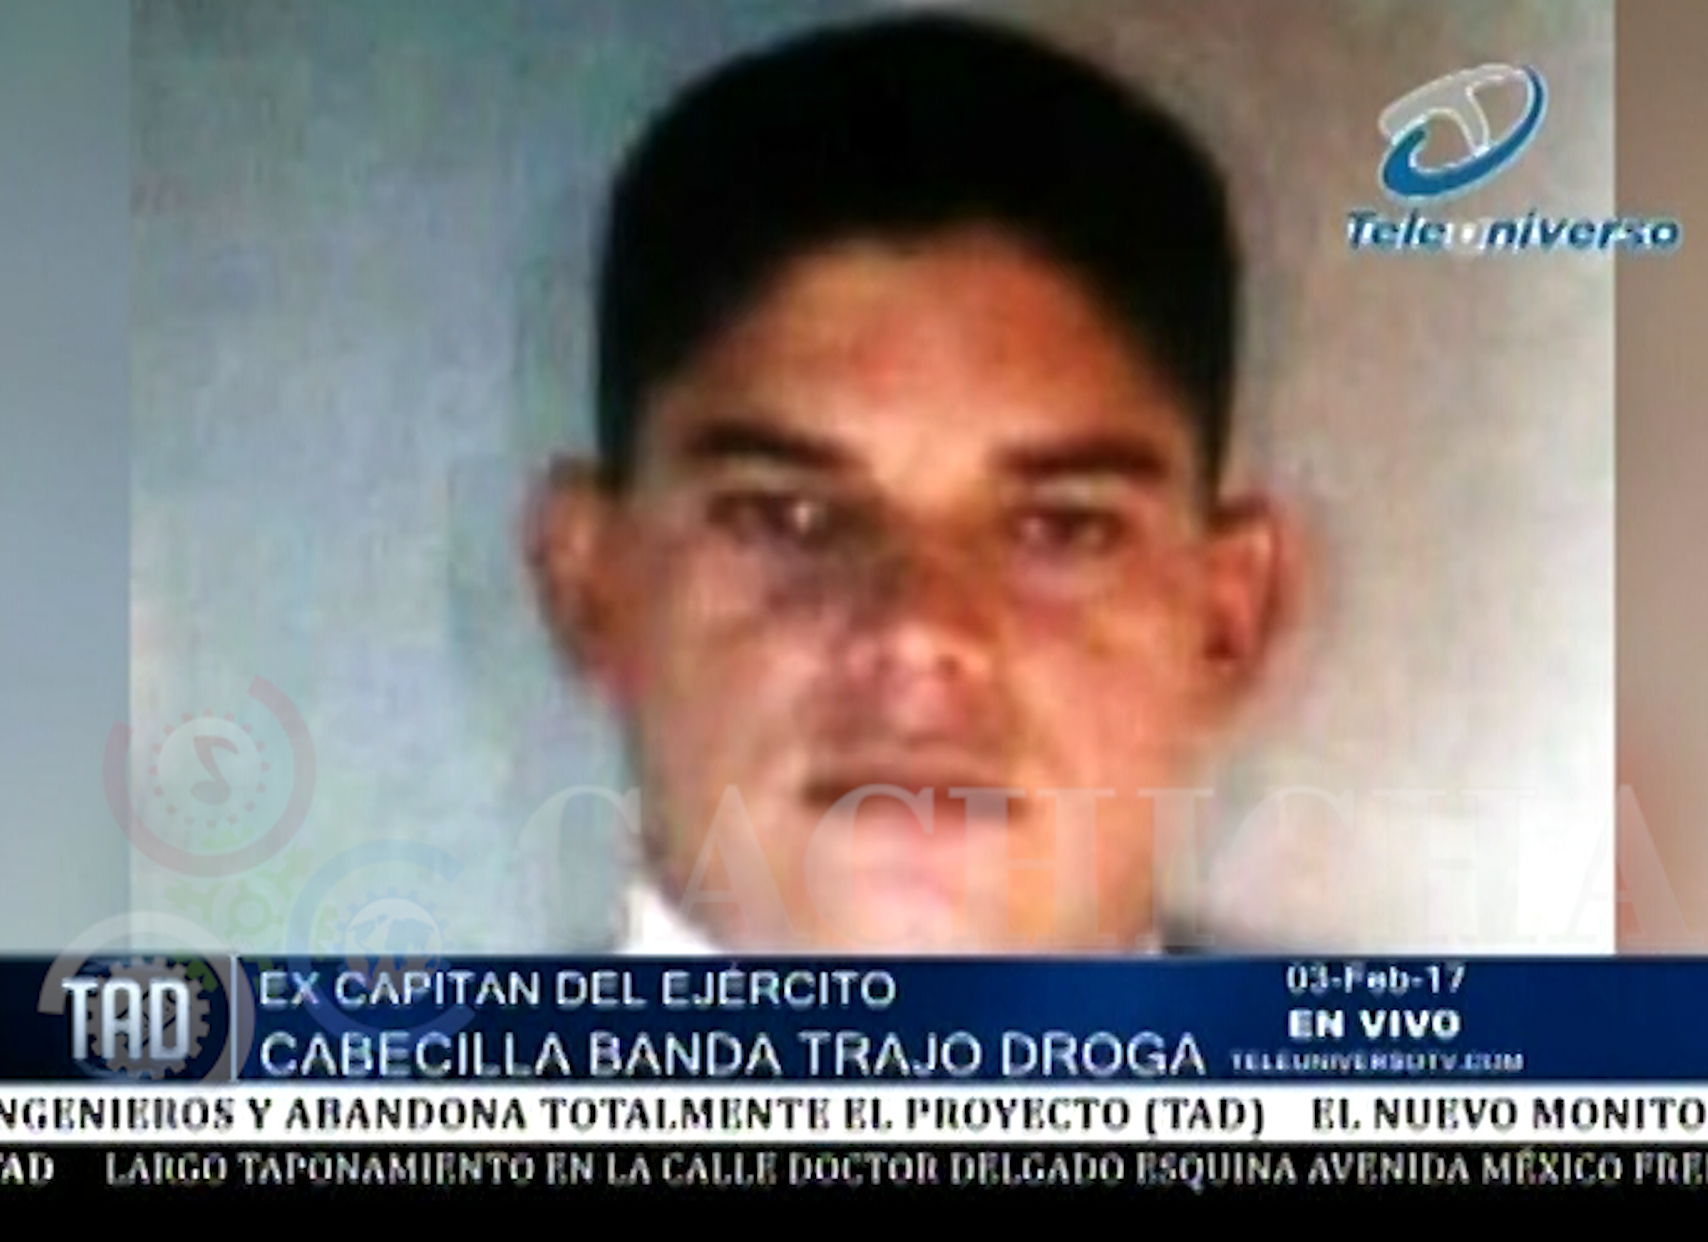 Este Es El Capitán Del Ejército Dominicano Capturado Full De Droga Y Que Trabaja Con Un Cartel De Colombia